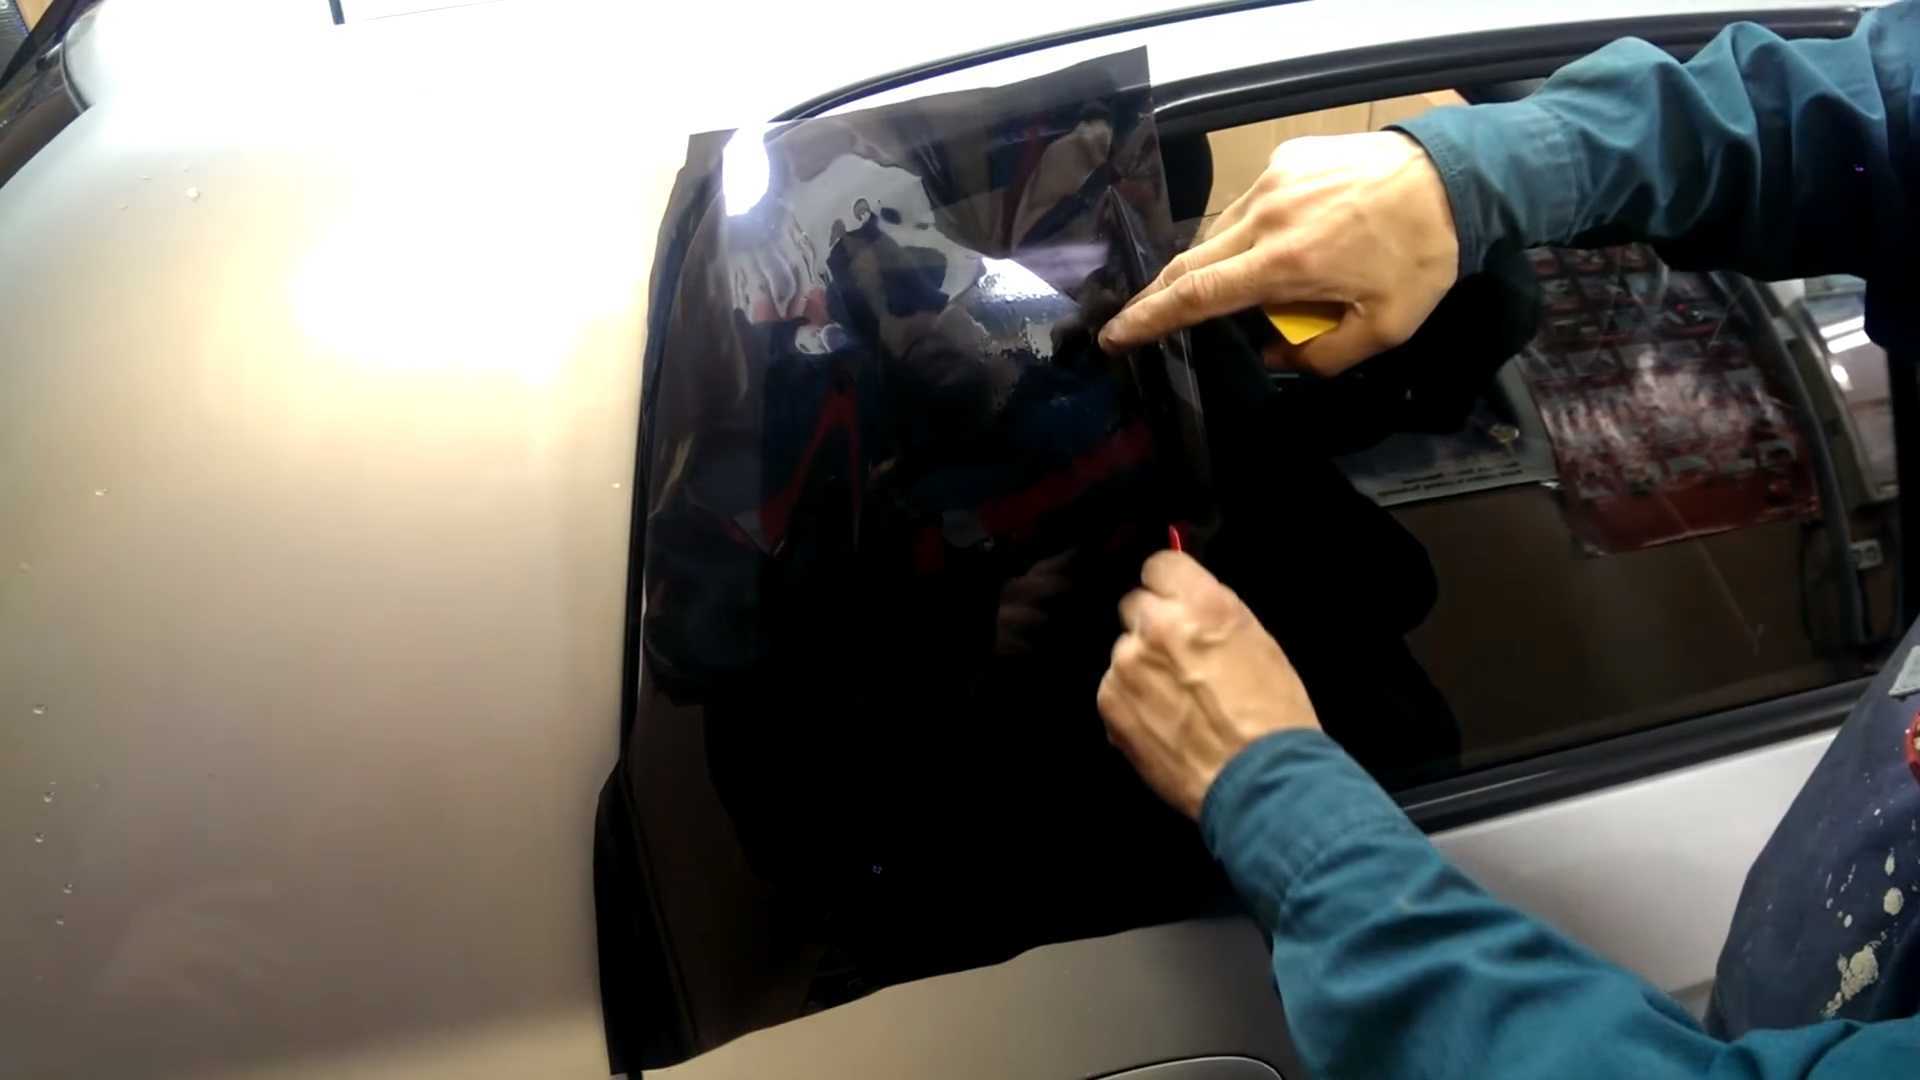 Как тонировать стекла автомобиля своими руками с феном